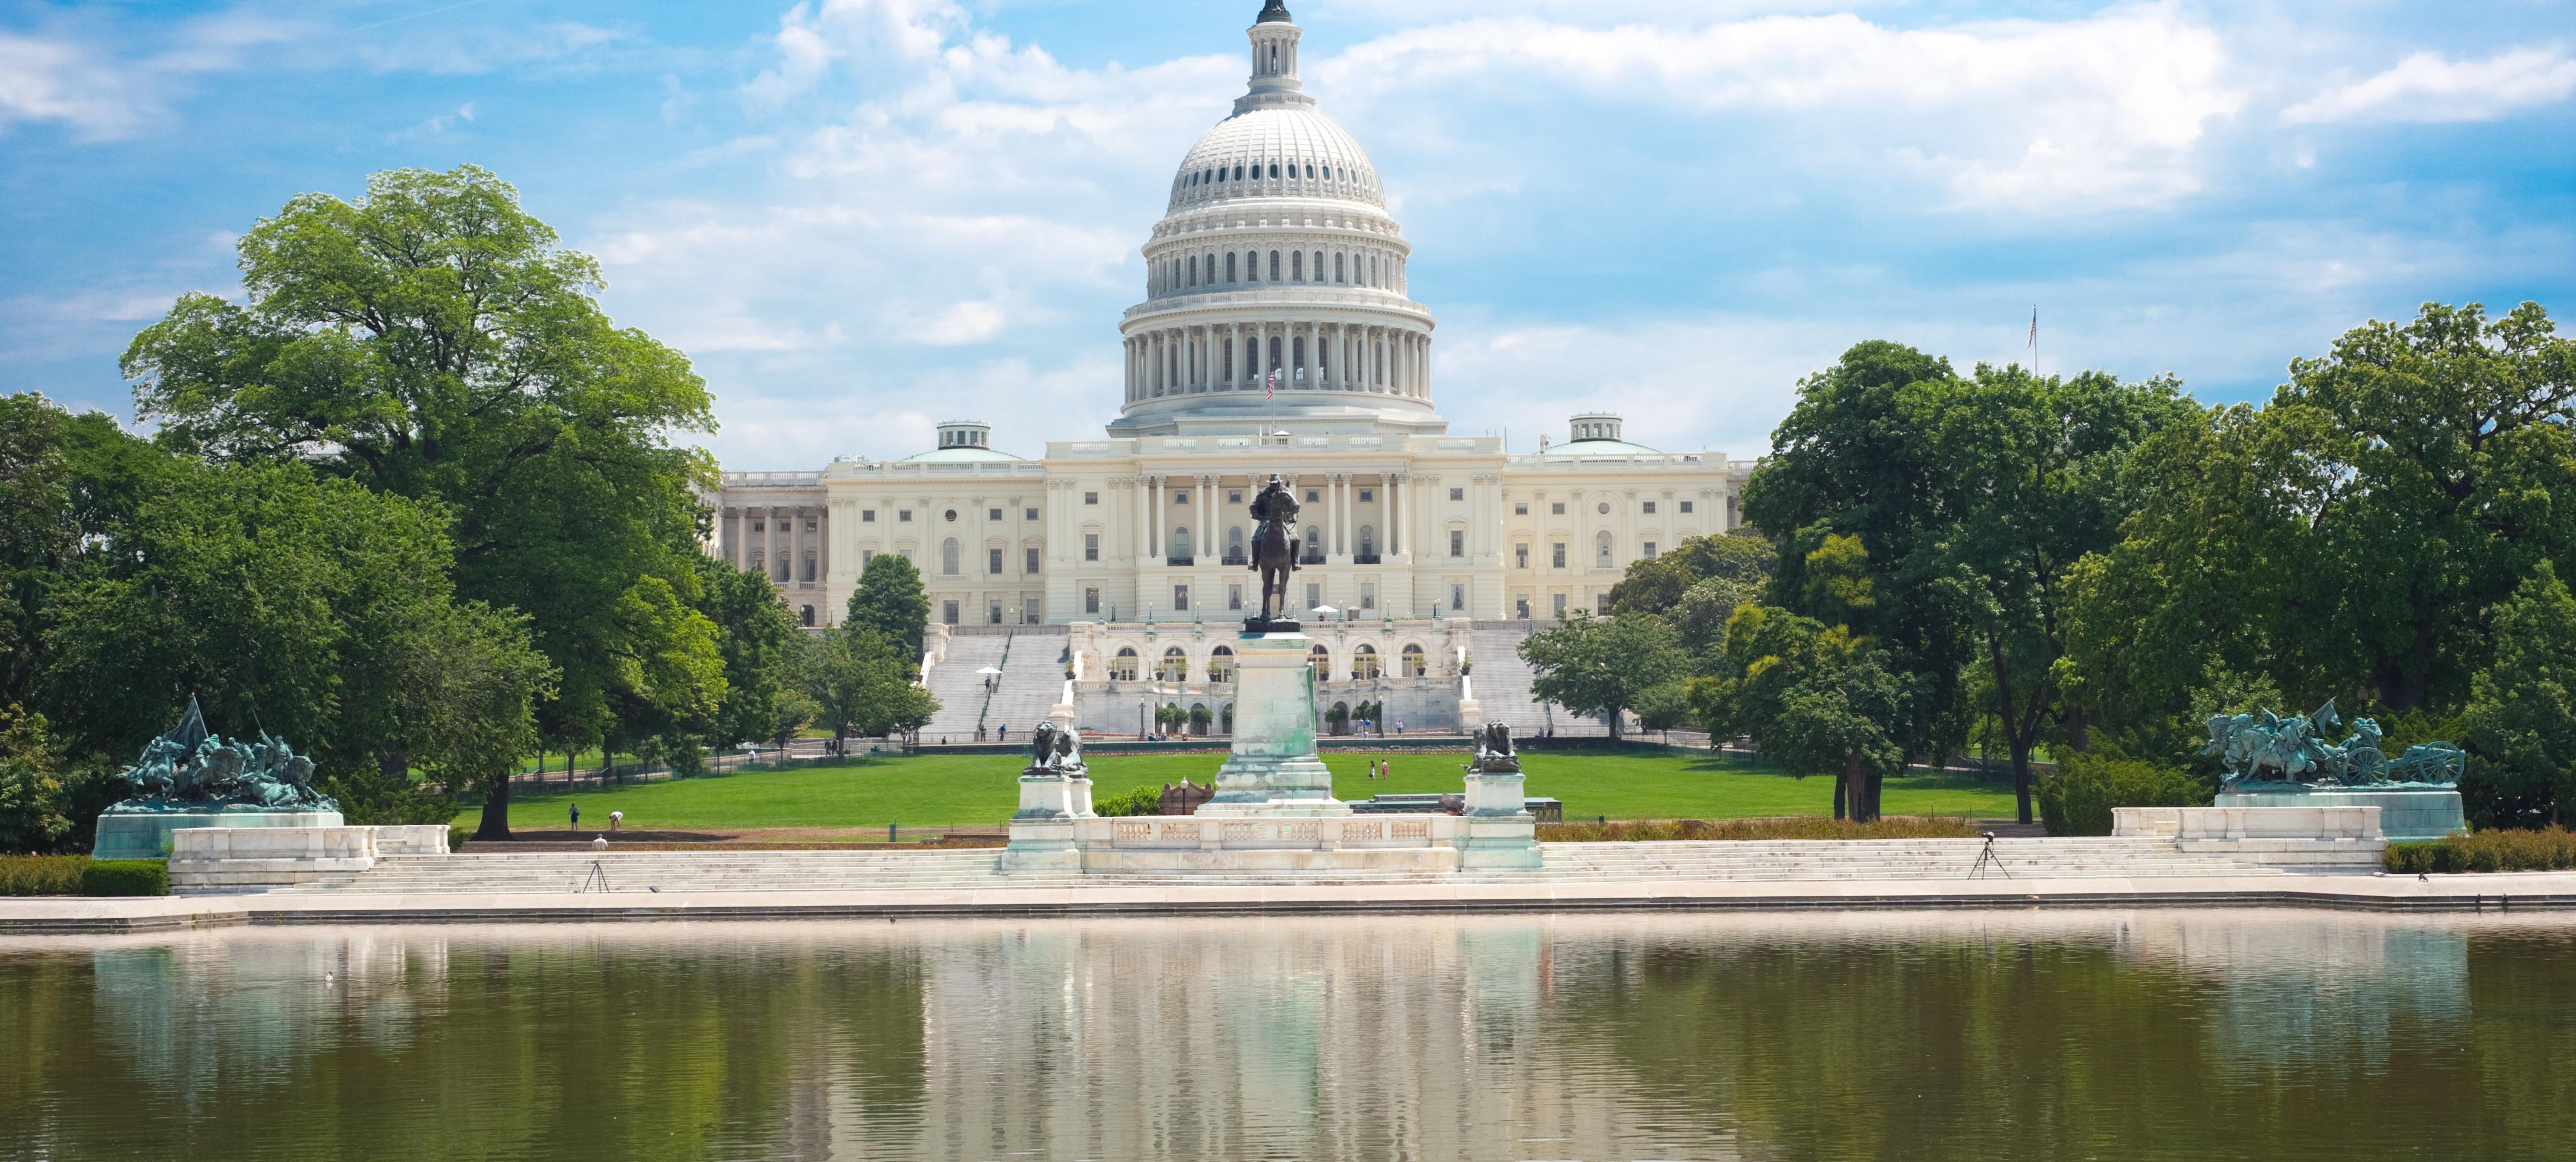 Tour guidato di Washington in giornata - 30 monumenti e attrazioni